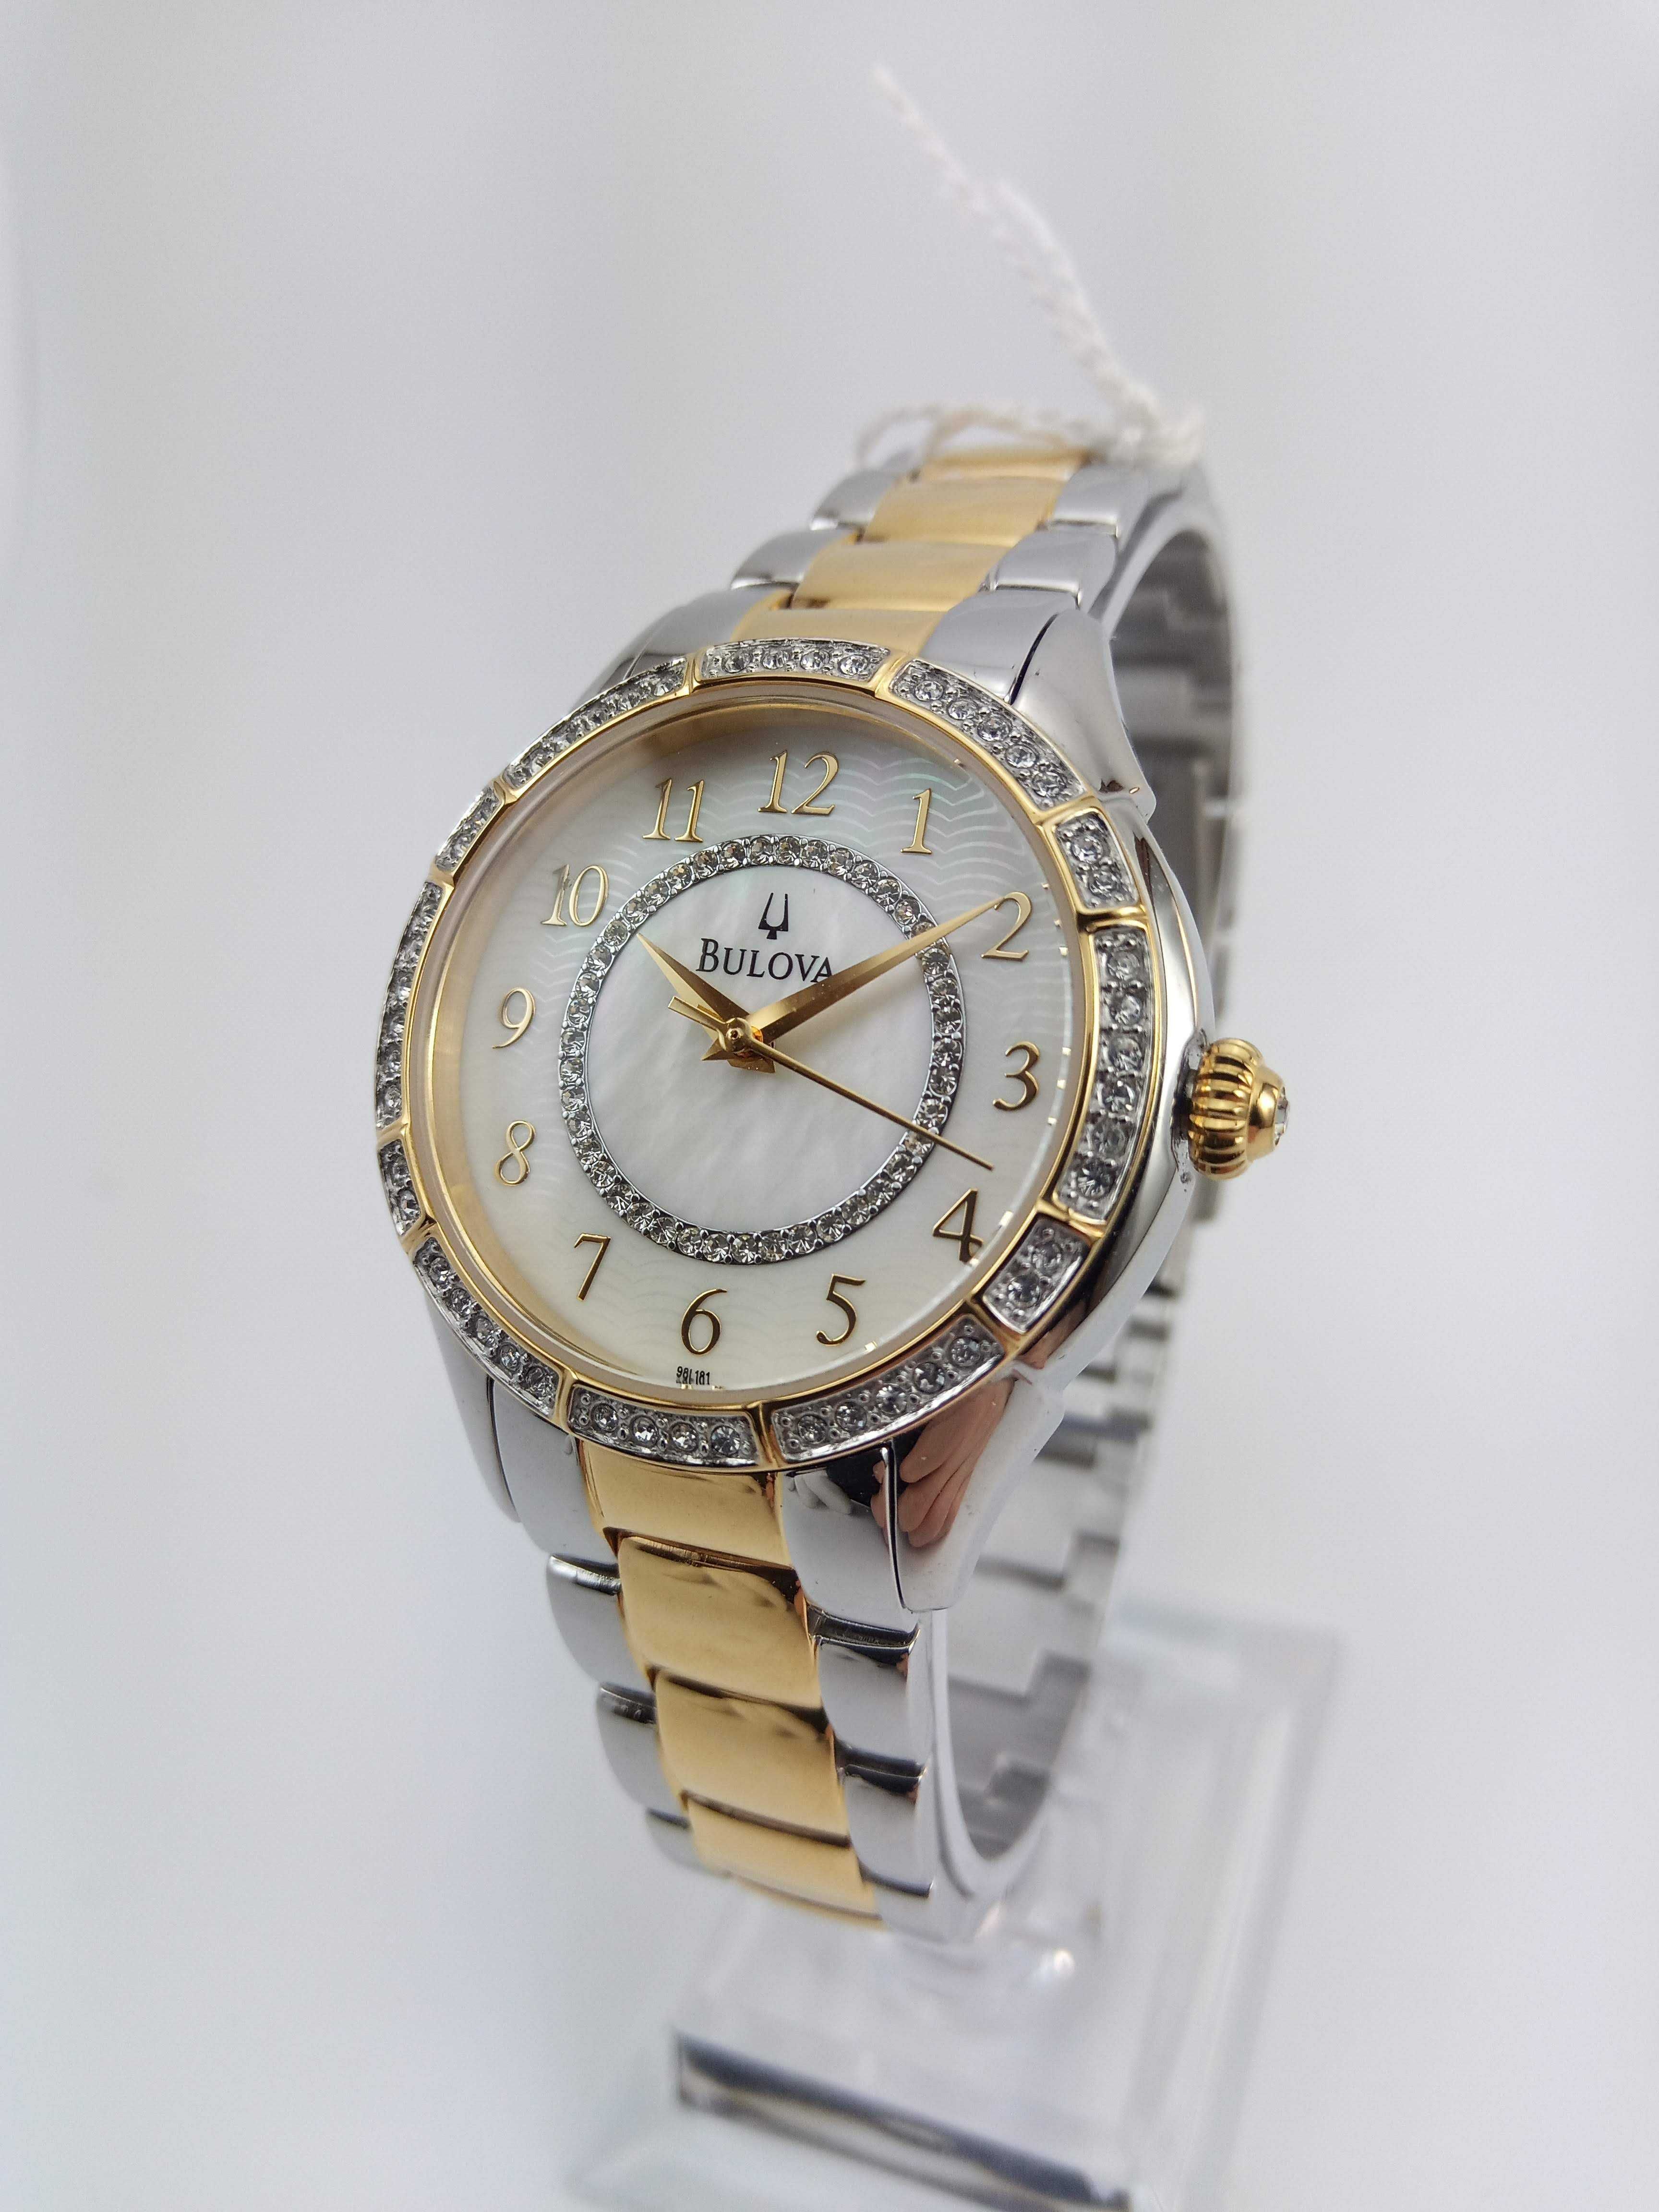 Женские часы Swarovski Bulova 98L181 с перламутровым циферблатом